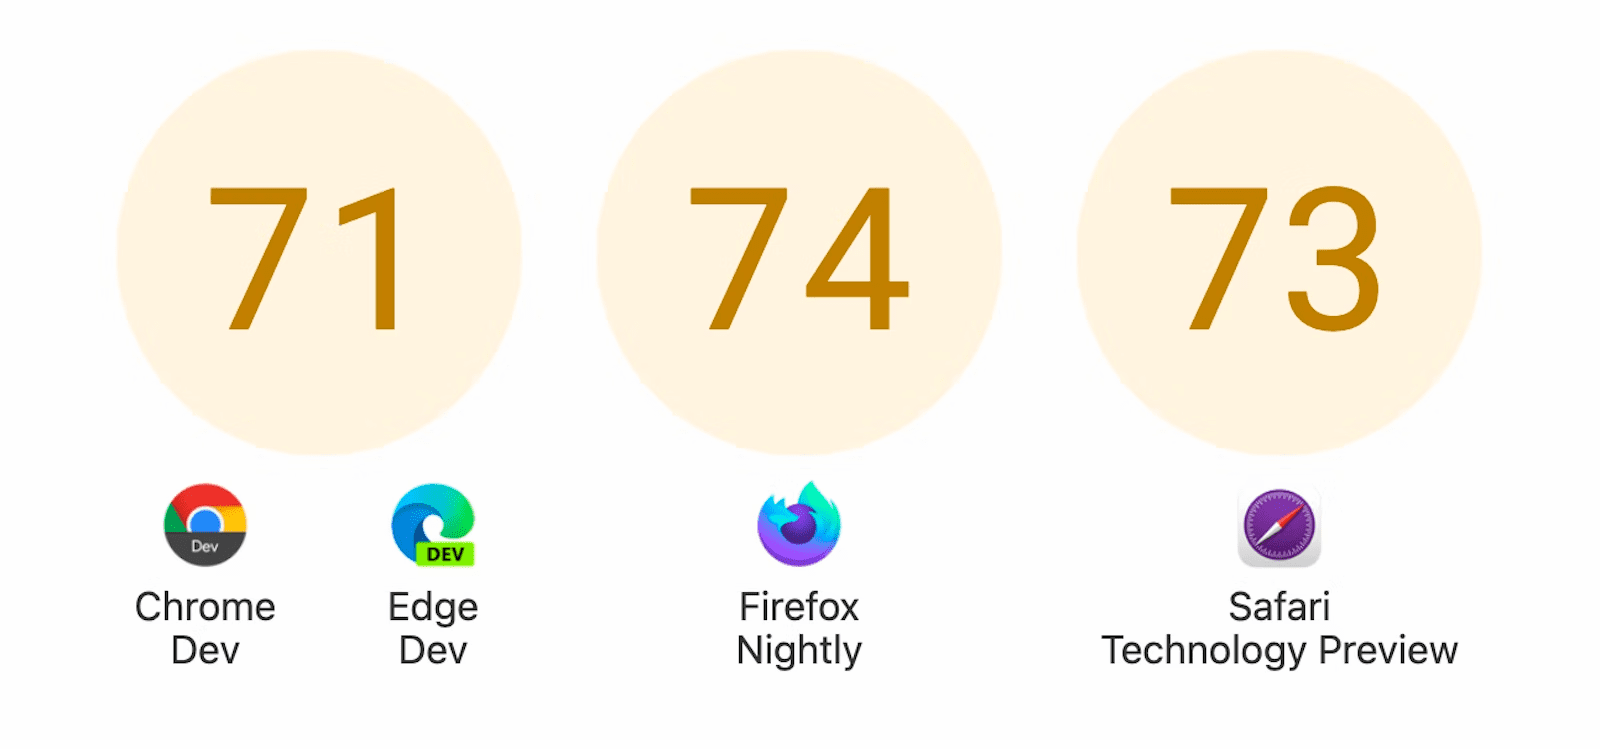 Üç çevrenin puanları gösteriliyor: Chrome Dev ve Edge Dev için 71, Firefox Gecelik için 74 ve Safari Teknoloji Önizlemesi için 73.